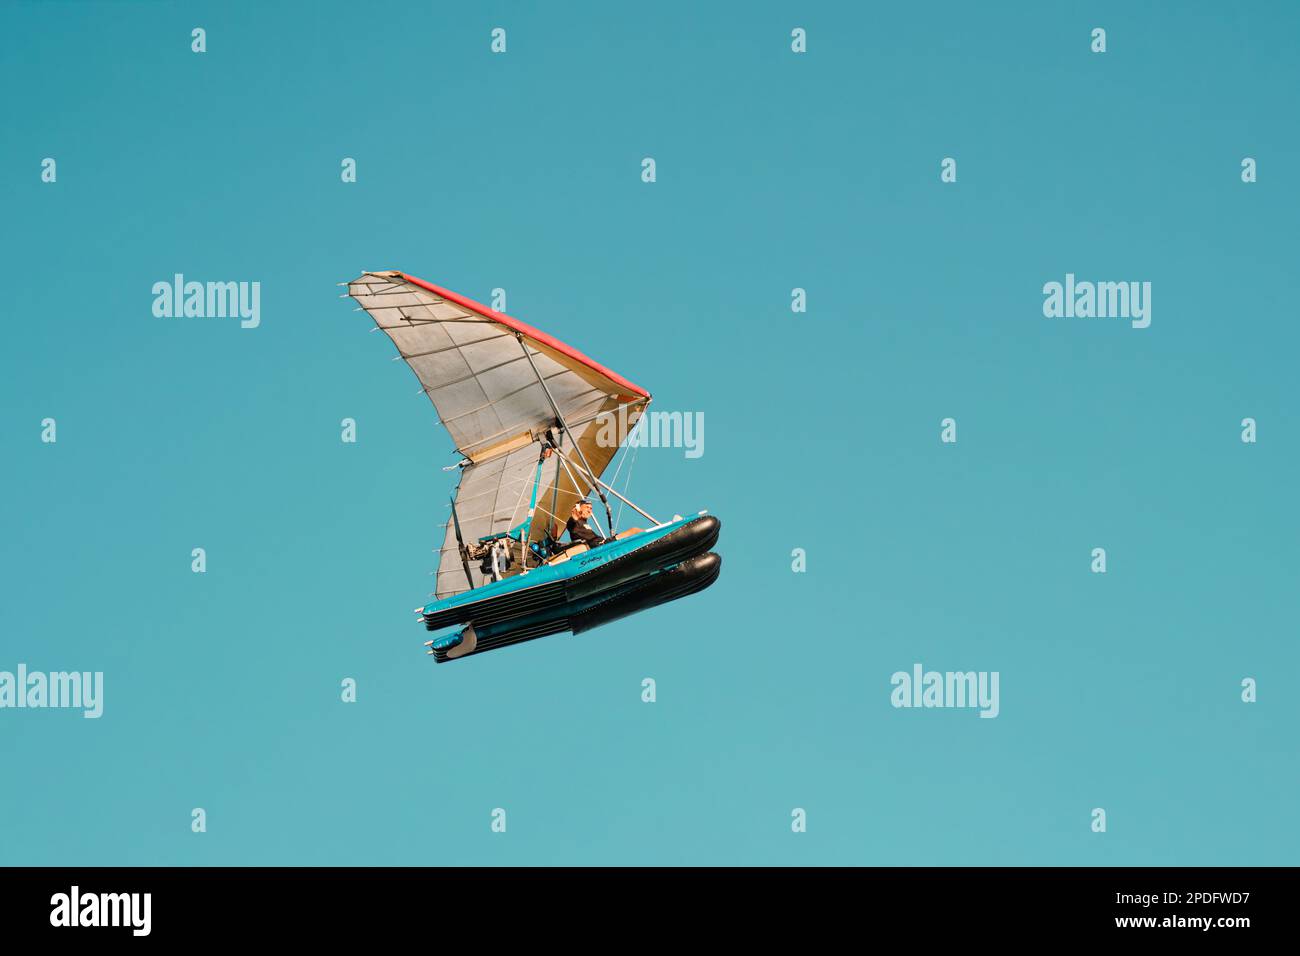 Ein älterer Mann, der mit der Hand in einem fliegenden Schlauchboot hallo sagt. Drachenfliegen Extremsport mit klarem blauem Himmel in Miami Stockfoto